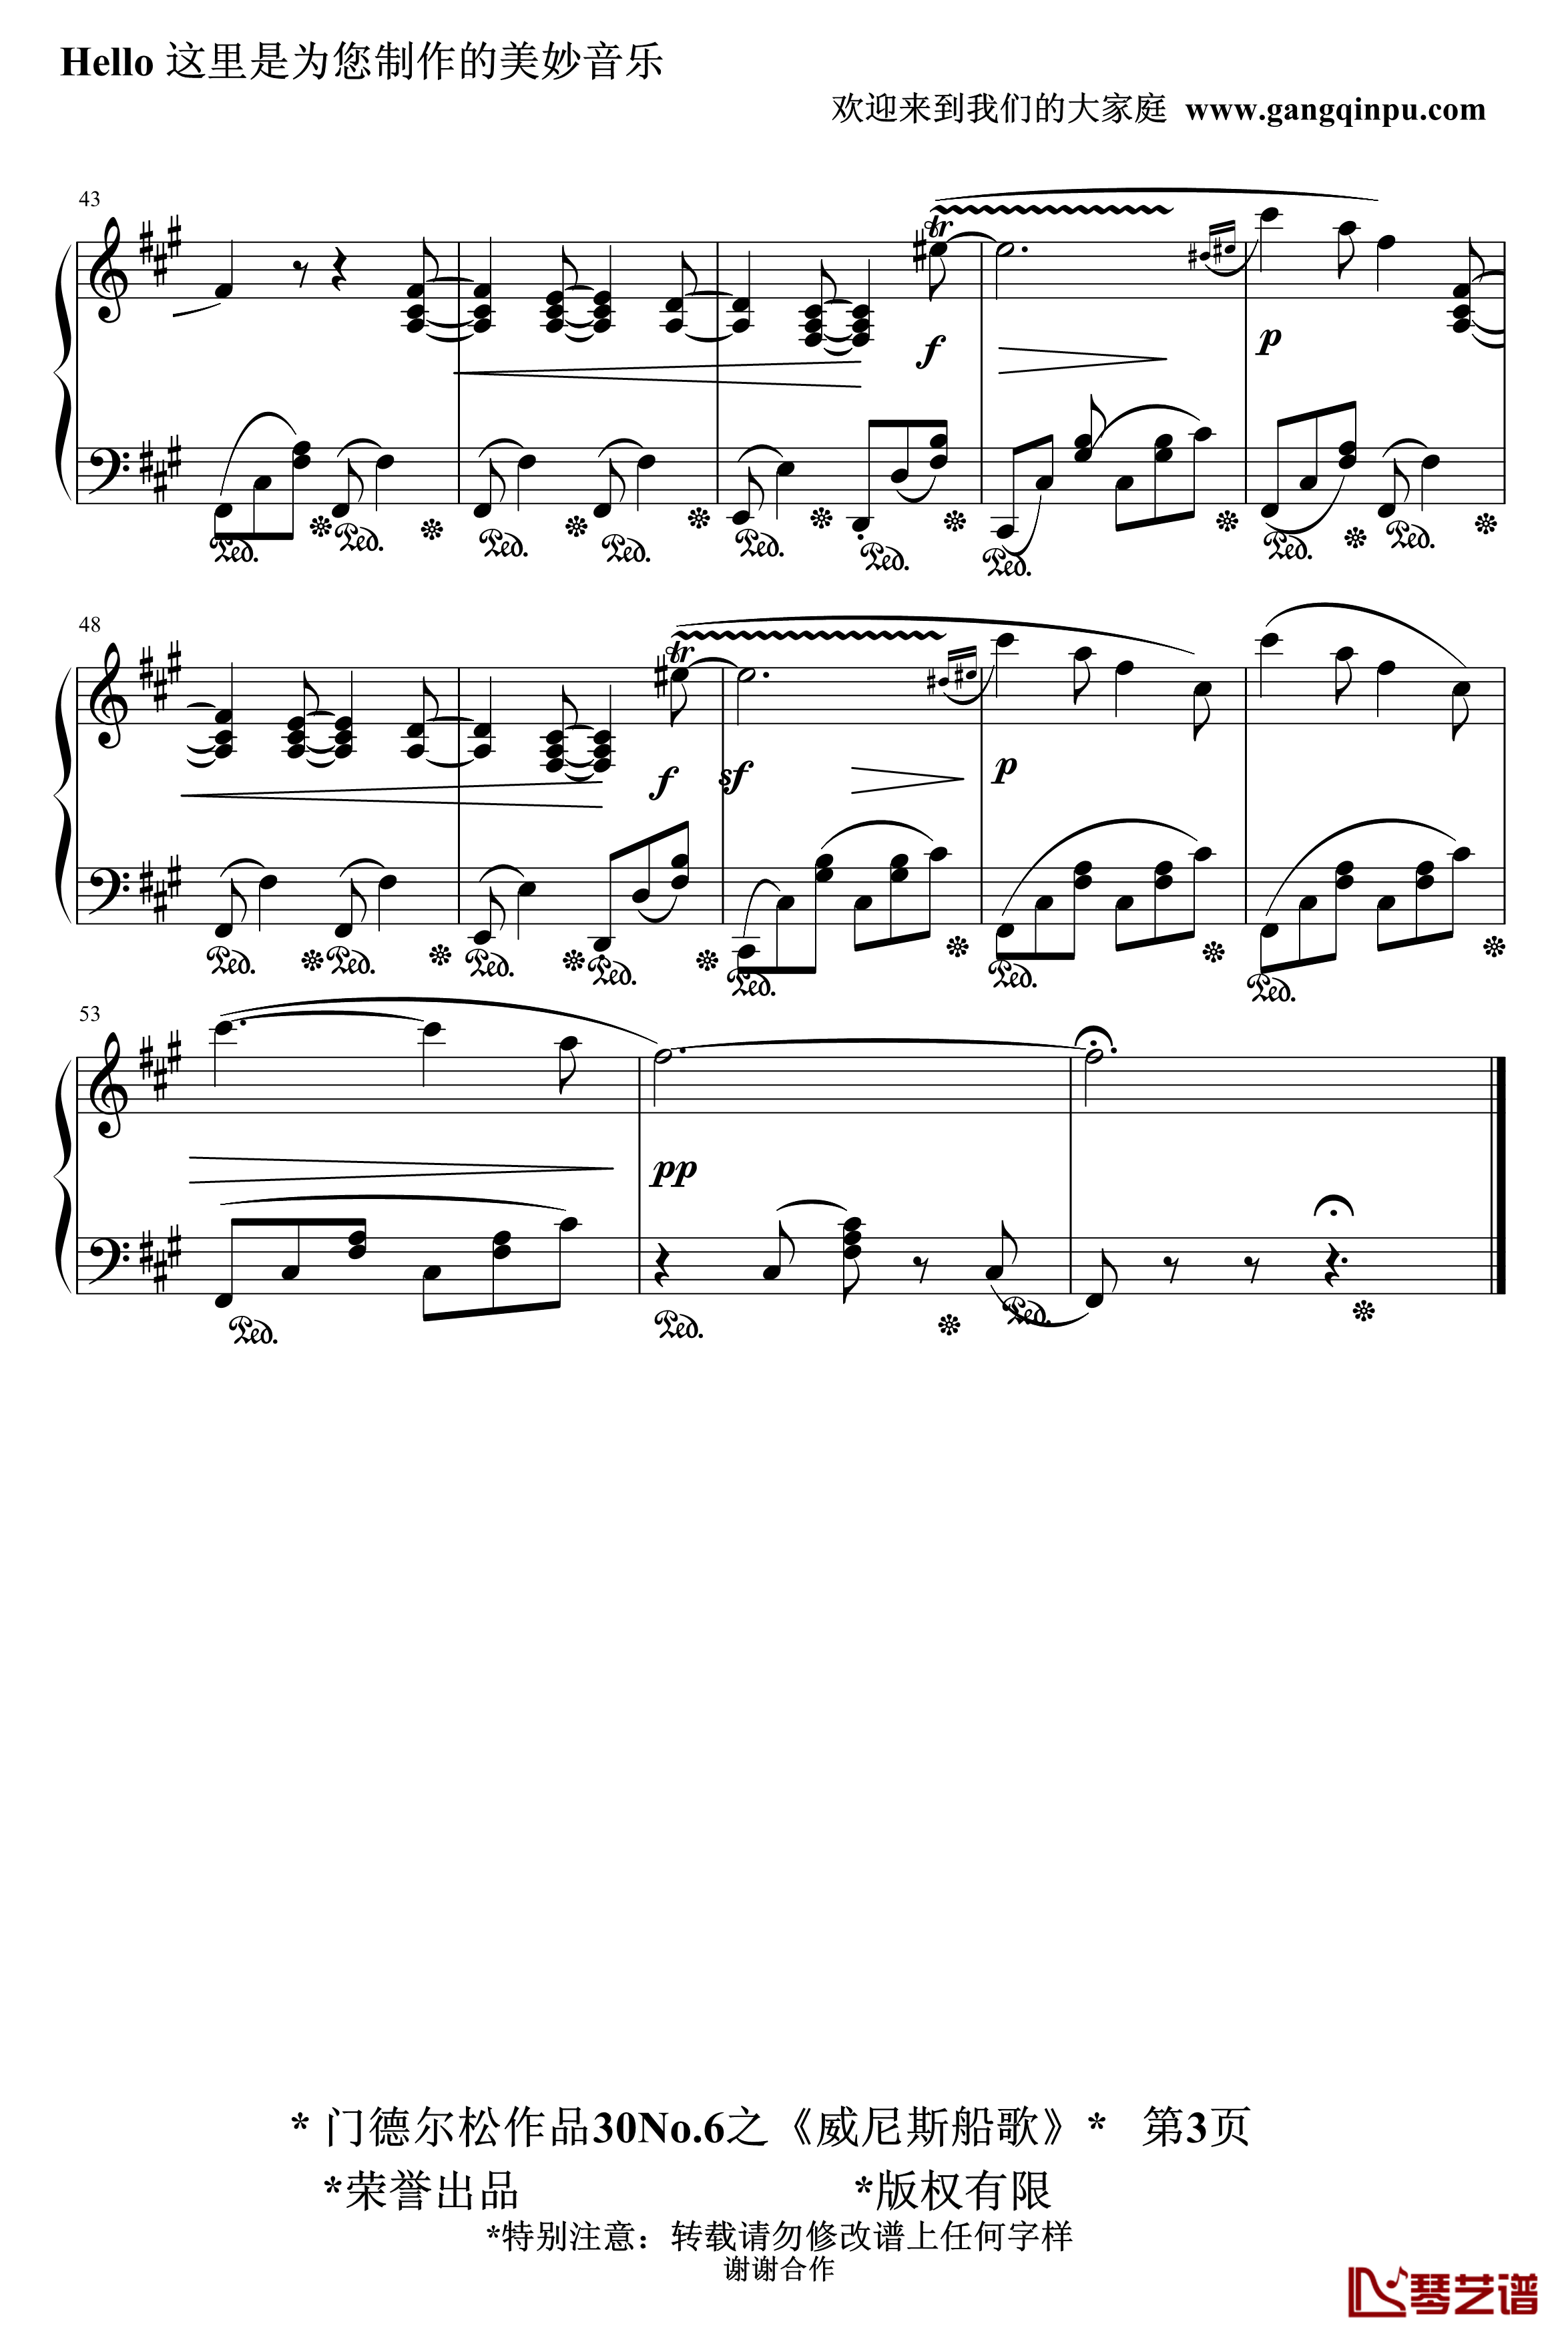 威尼斯船歌钢琴谱-精制-门德尔松3